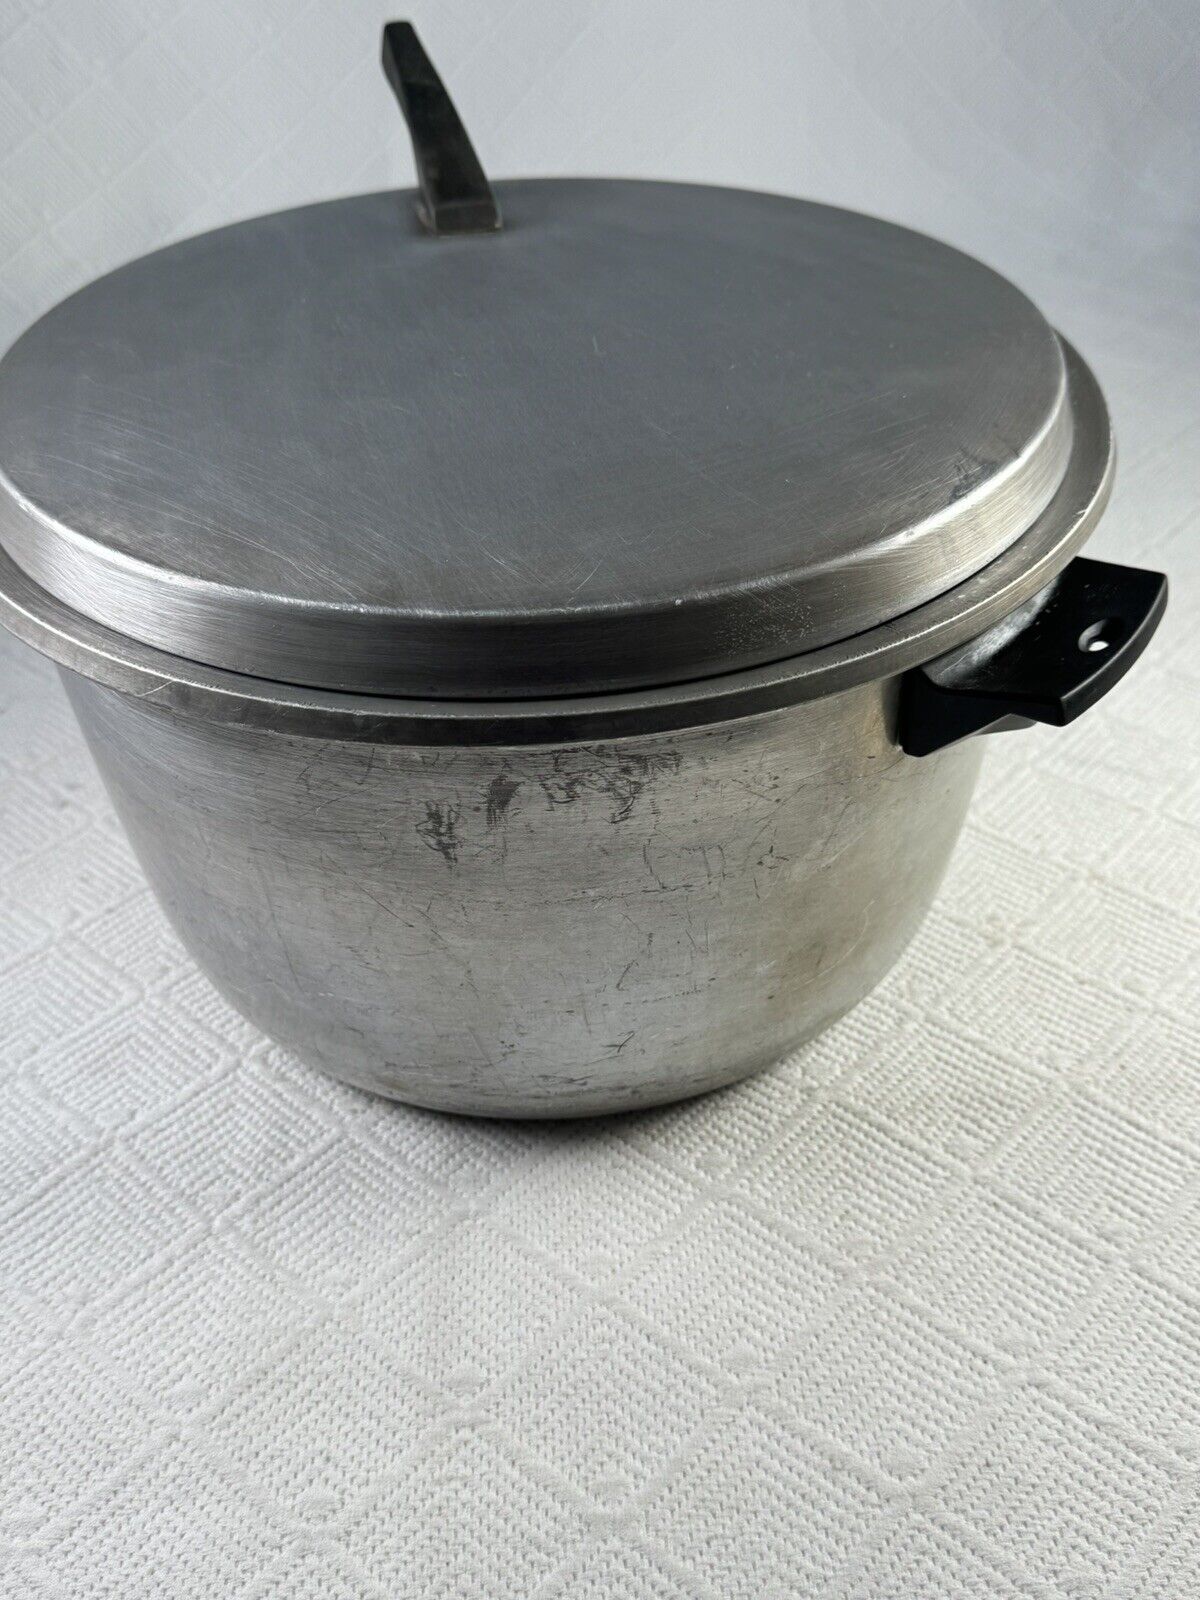 Vintage Mirro M-1238 8 Qt. Aluminum Stock Pot w/Lid